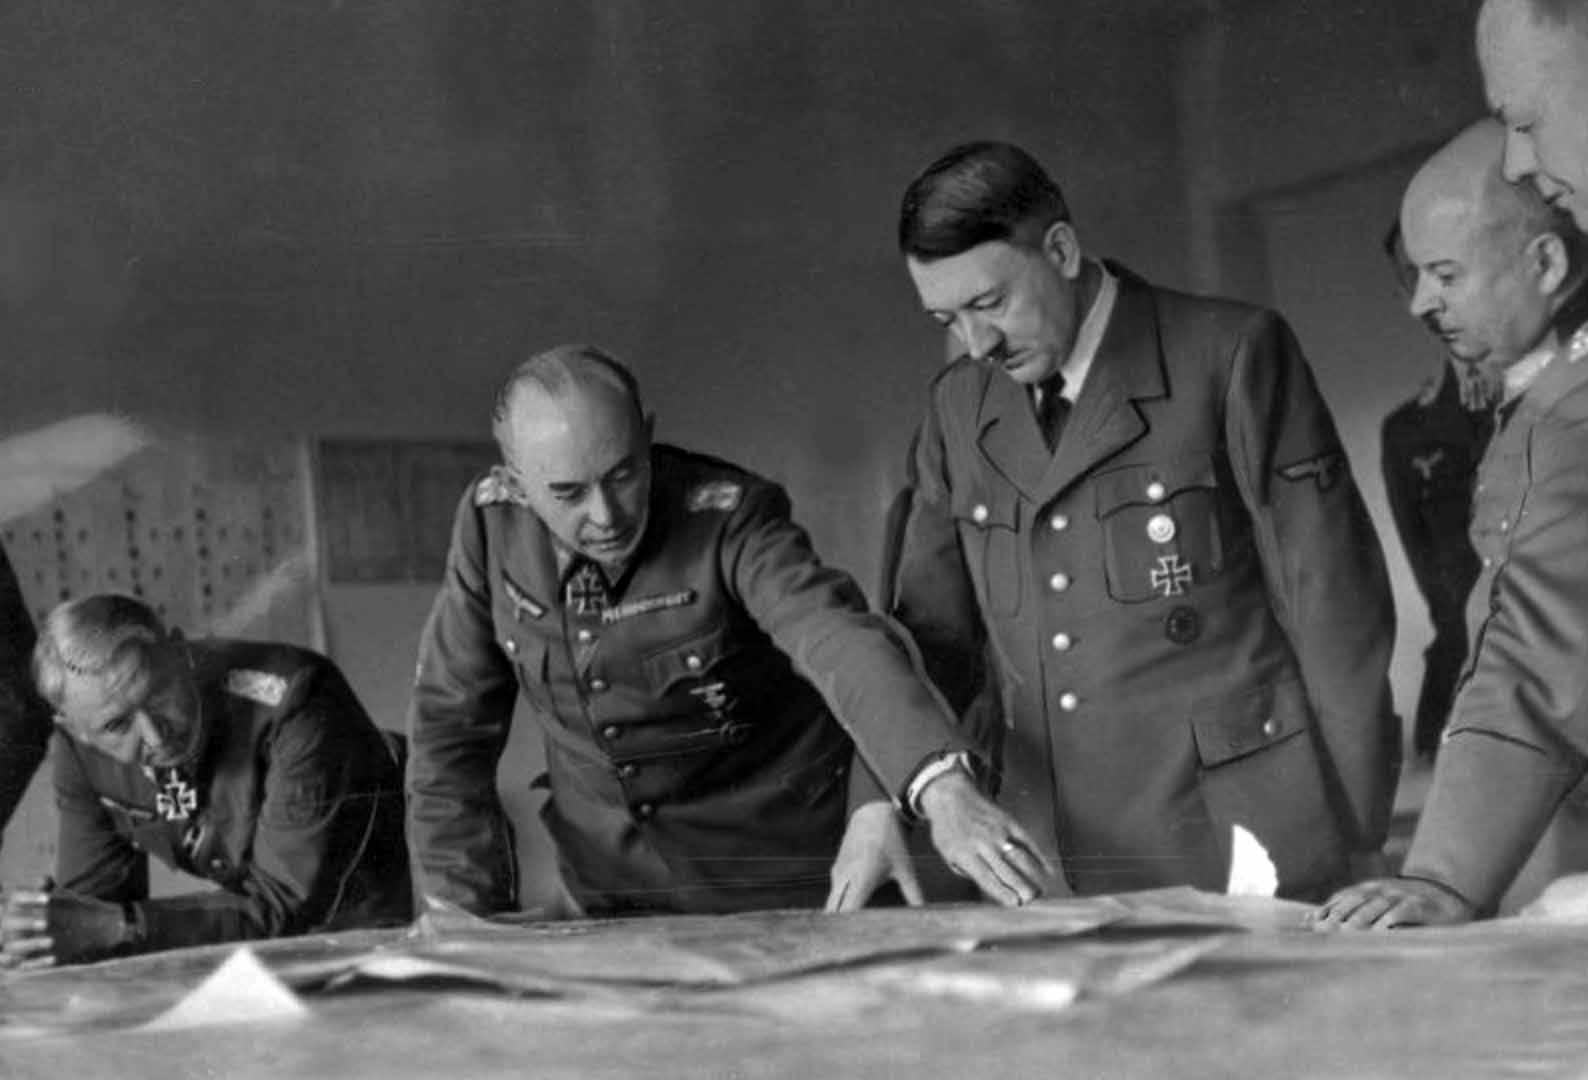 Hitler weakened after Stalingrad - by Martin Cherrett